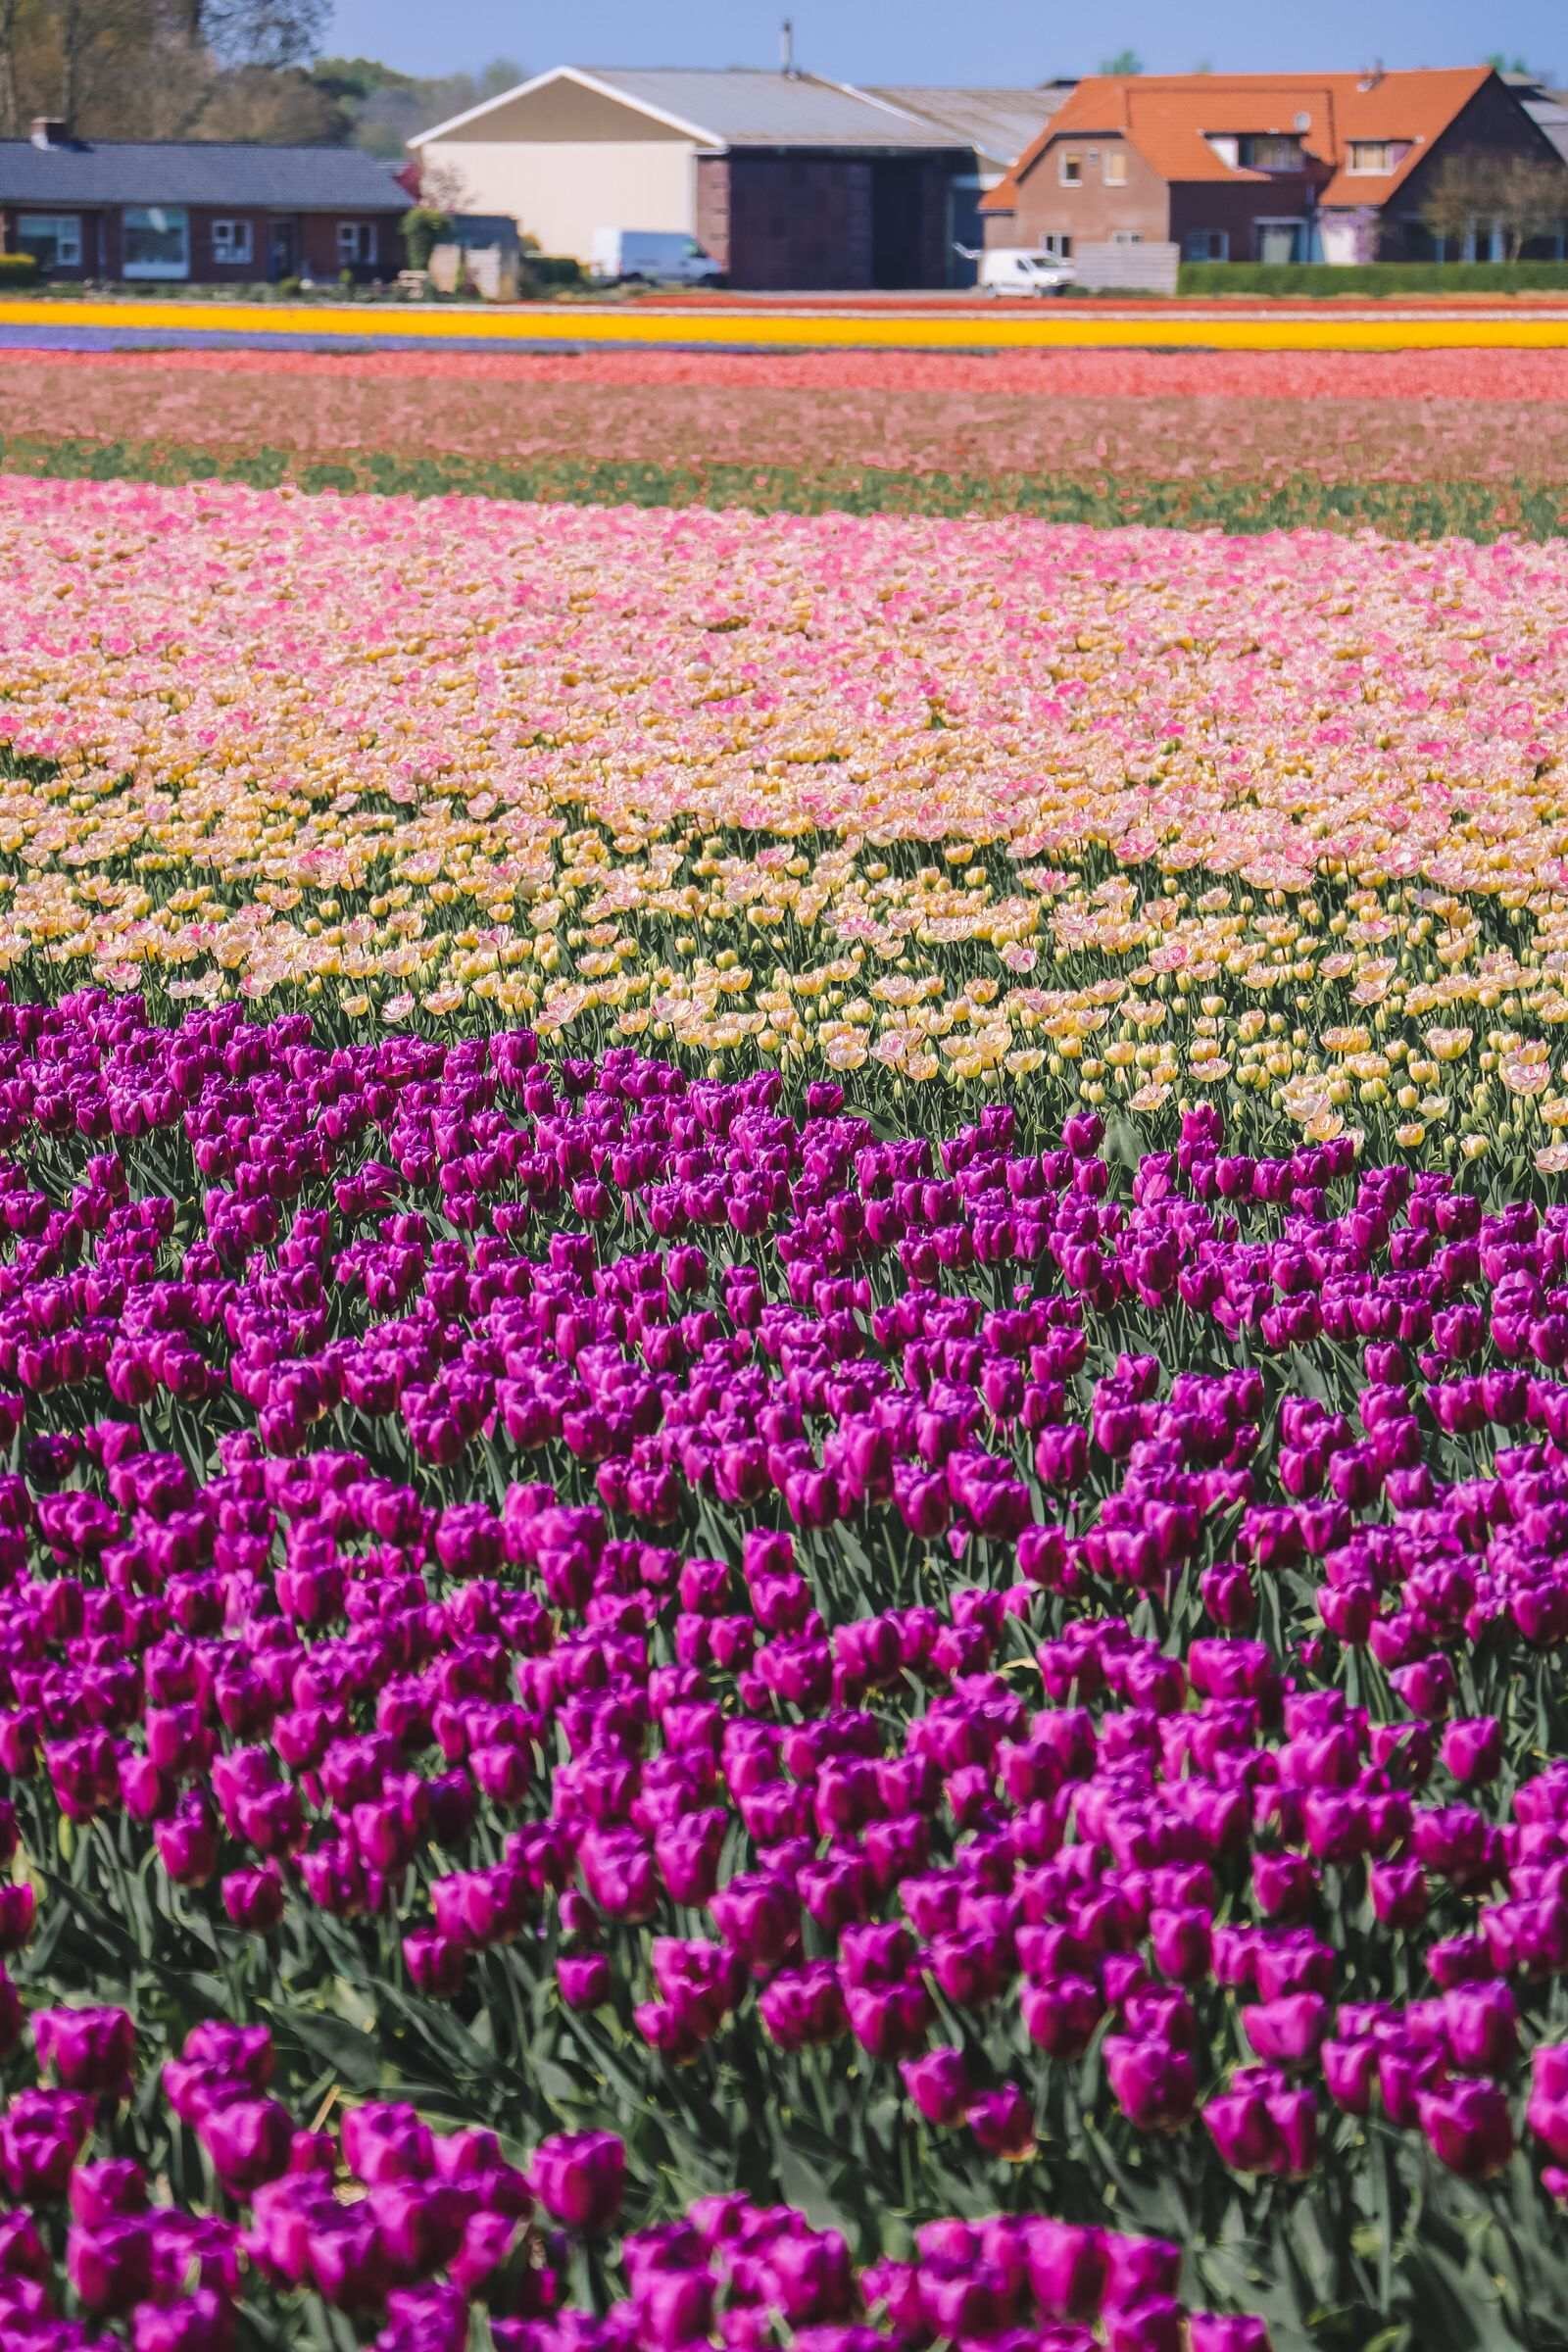 A field of purple tulips in Lisse